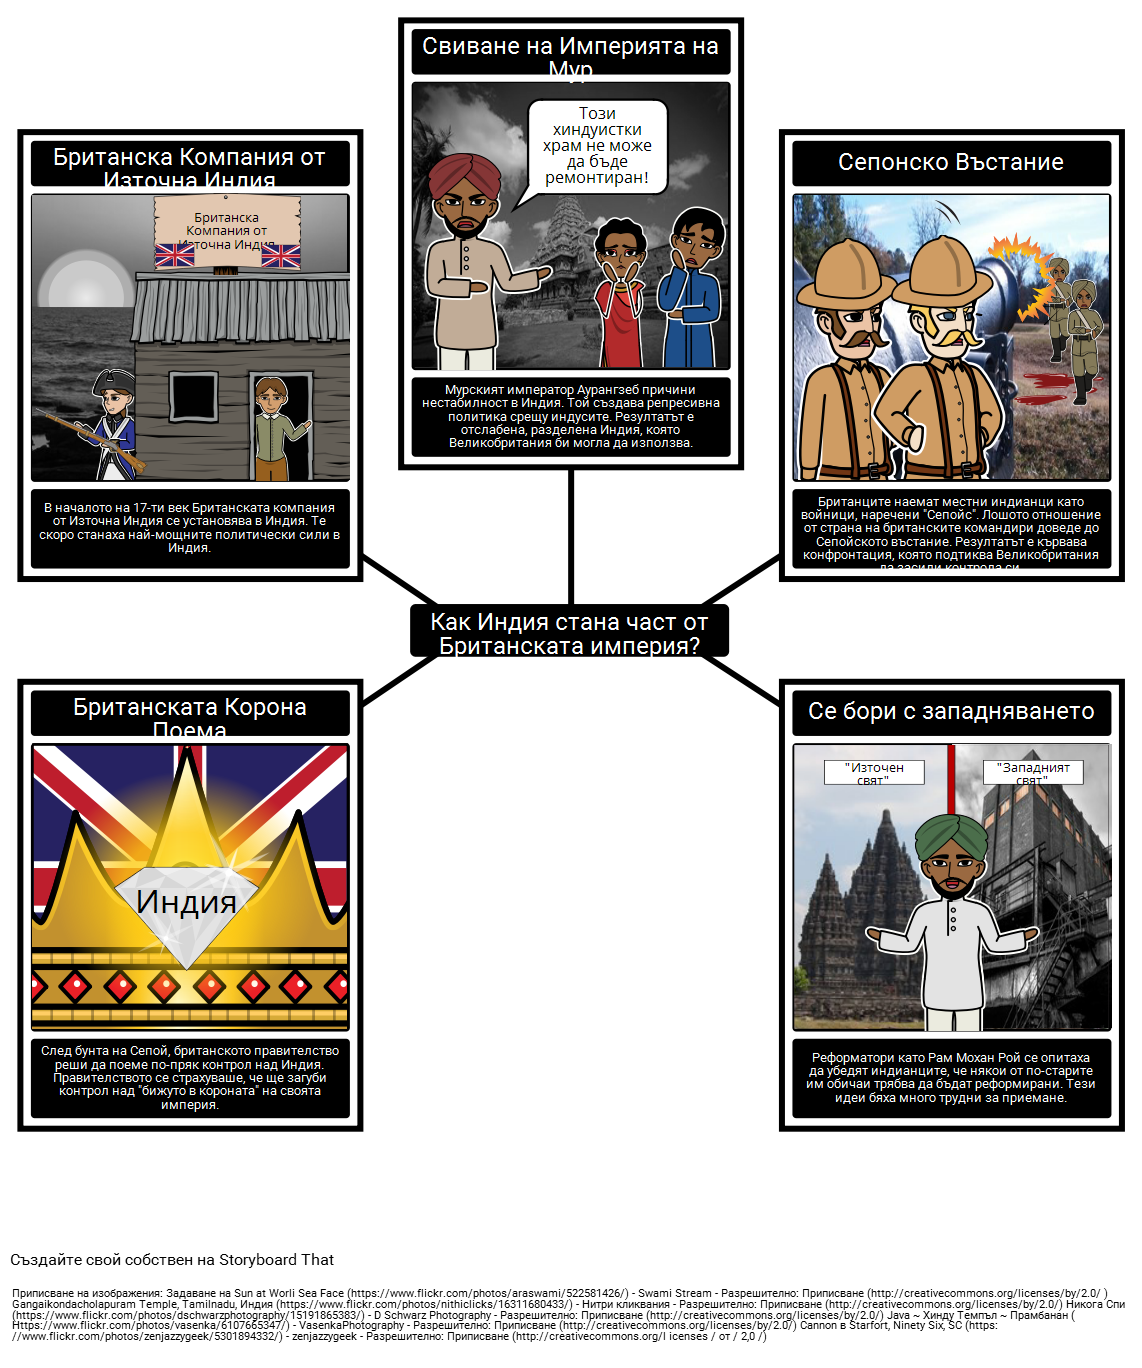 История на Империализма - Включване на Индия в Британската Империя